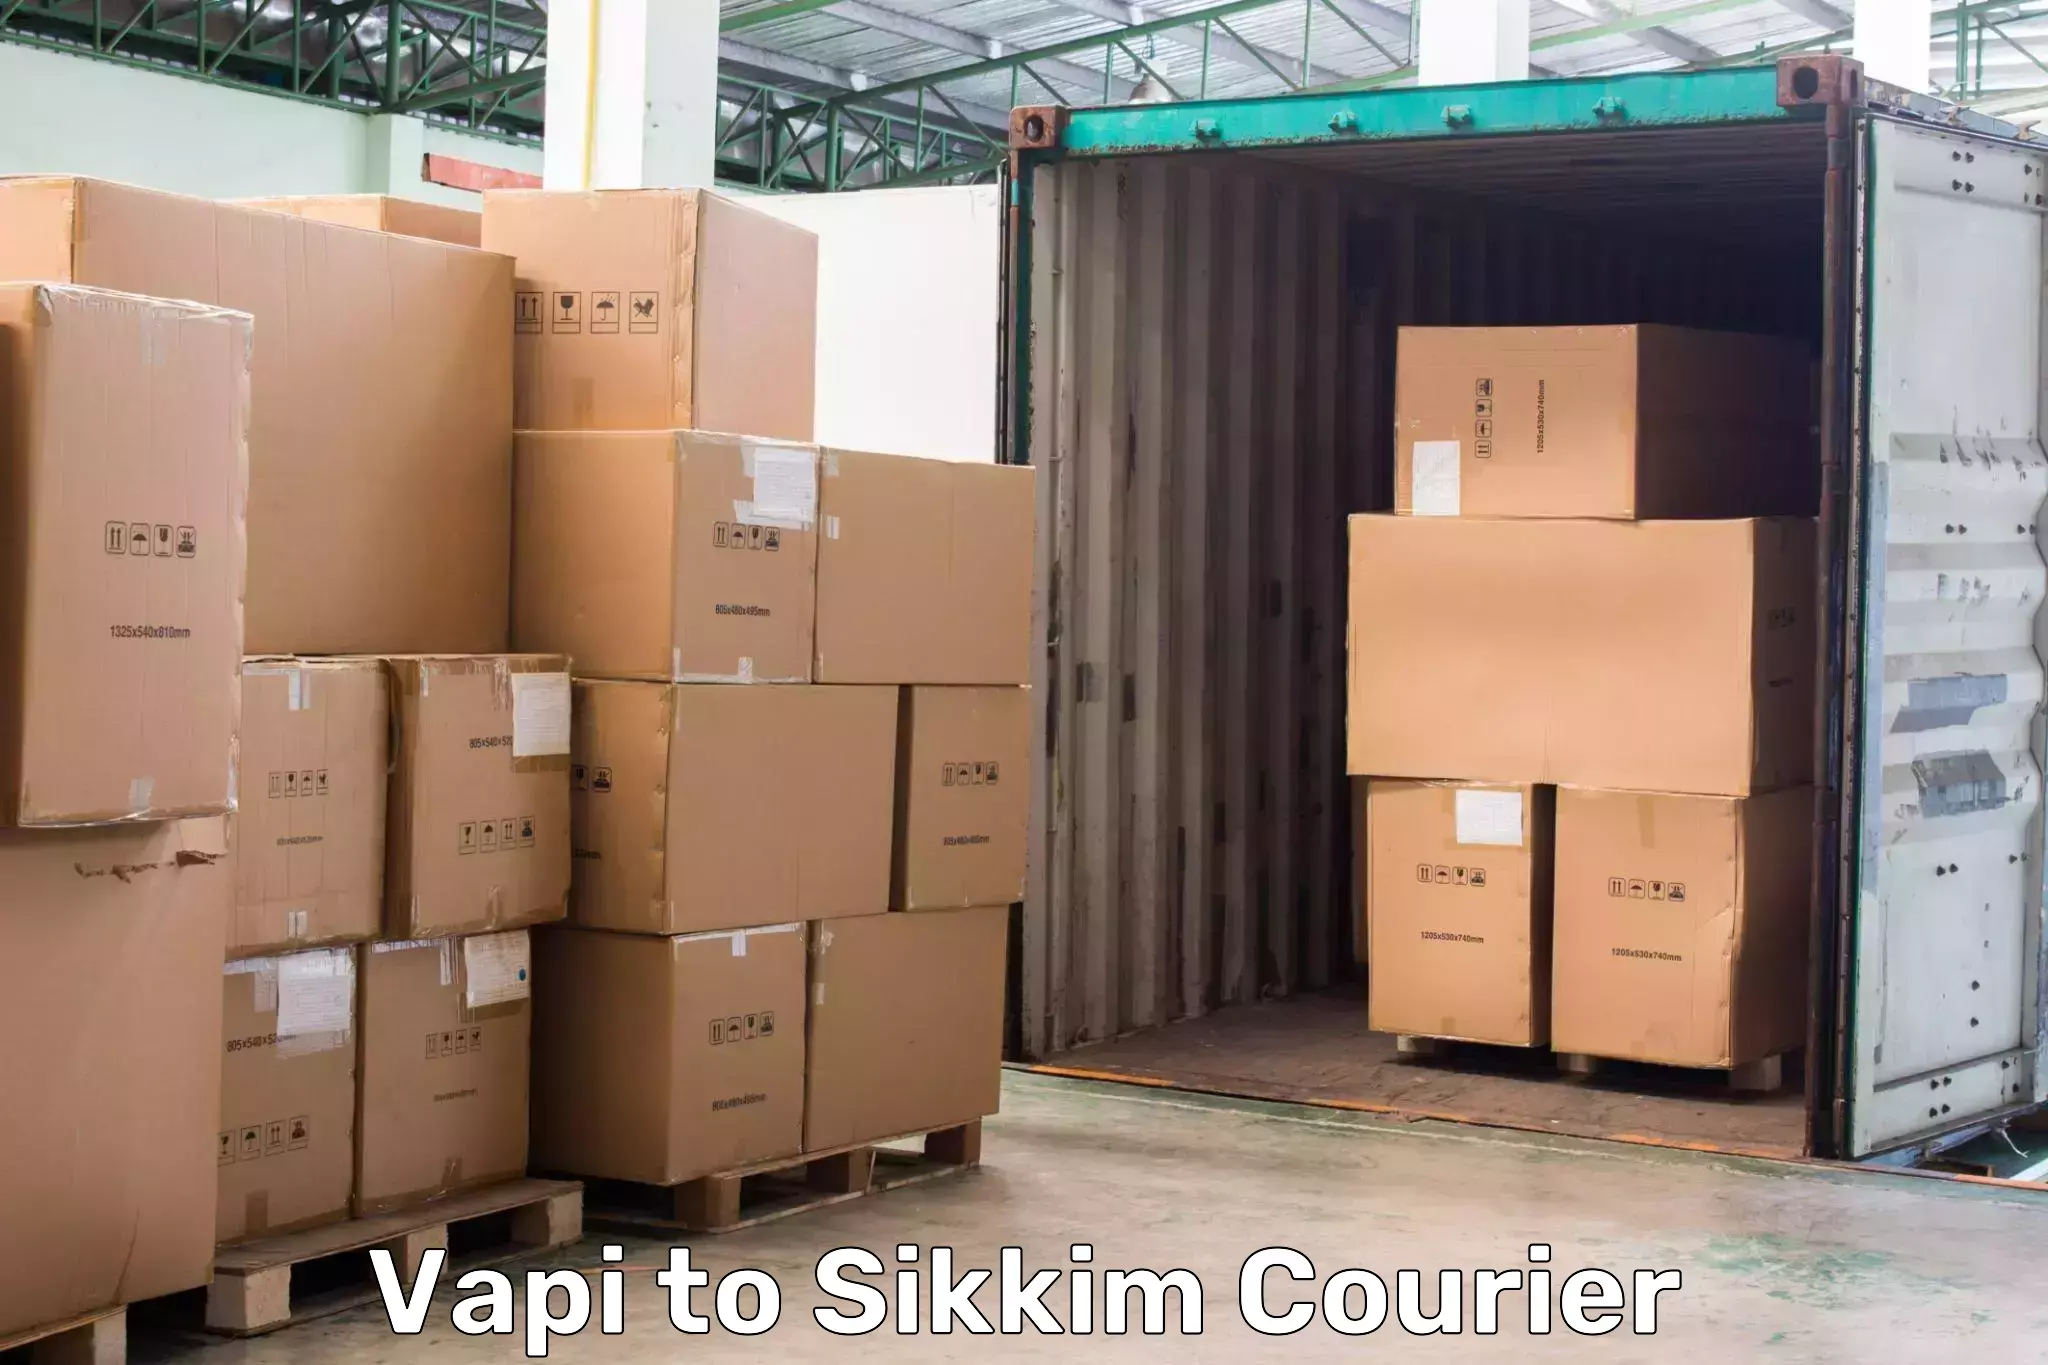 Delivery service partnership Vapi to South Sikkim